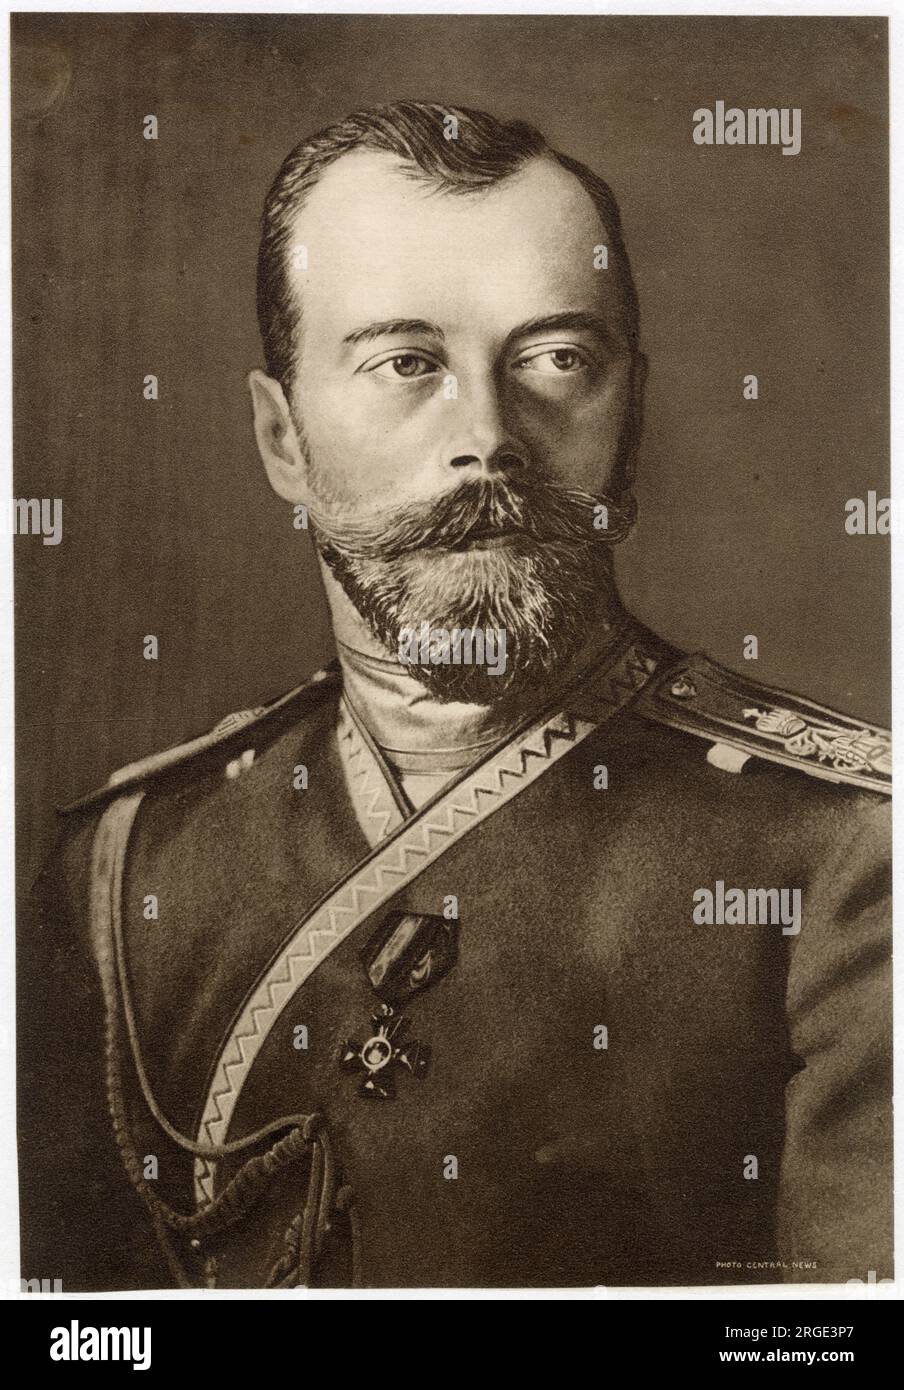 Nikolay Aleksandrovich Tsar Nicolas II (1868 - 1918), ruled (1894 - 1917). Stock Photo